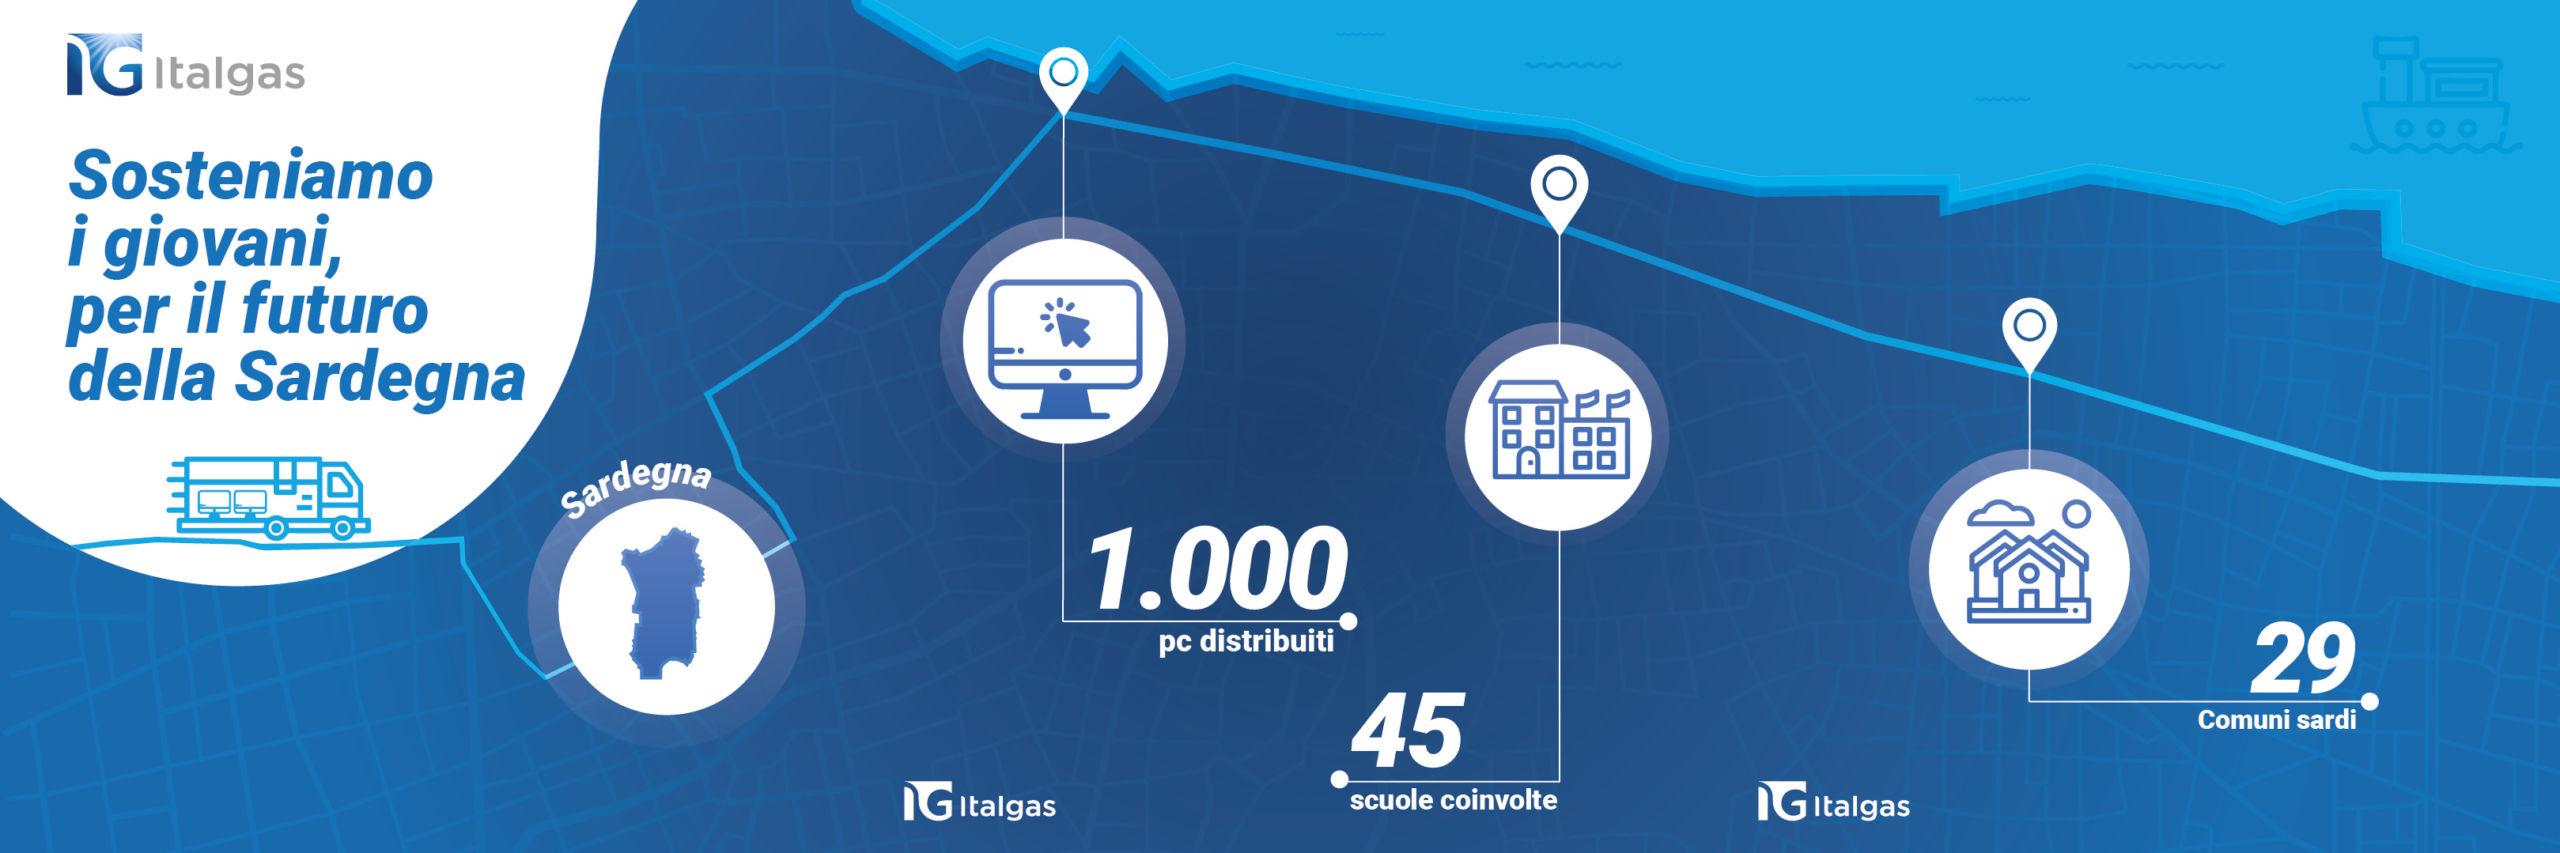 Digitalizzazione e istruzione.  Italgas dona 1.000 computer alle scuole della Sardegna